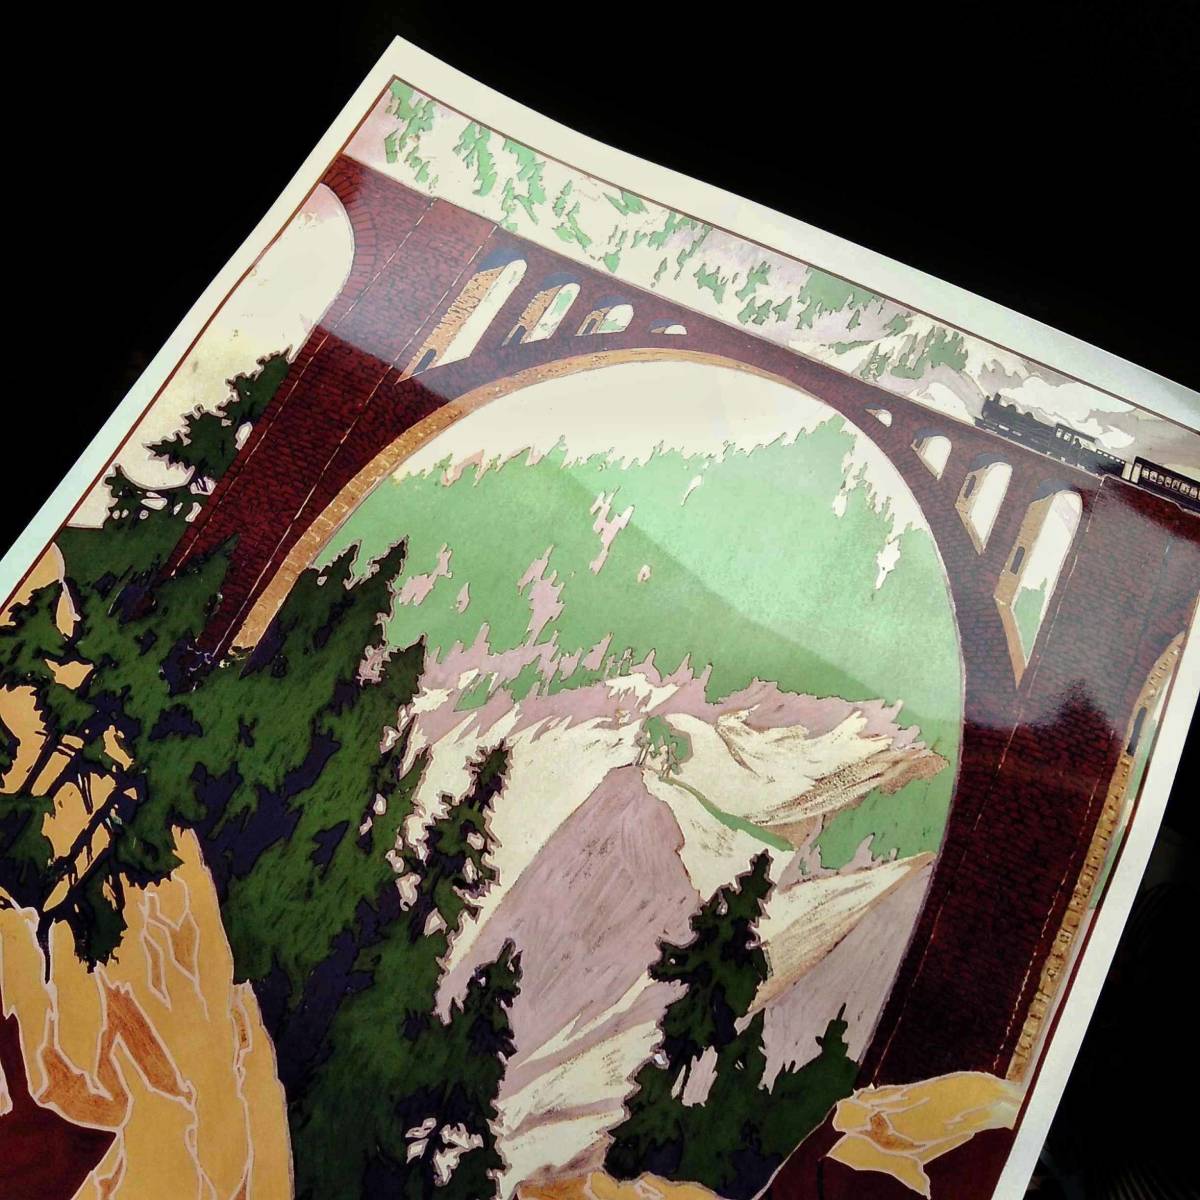  Швейцария re- салфетка железная дорога туристический иллюстрации искусство глянец постер A3 балка Cafe Classic retro интерьер лед река экспресс bell Nina локомотив 